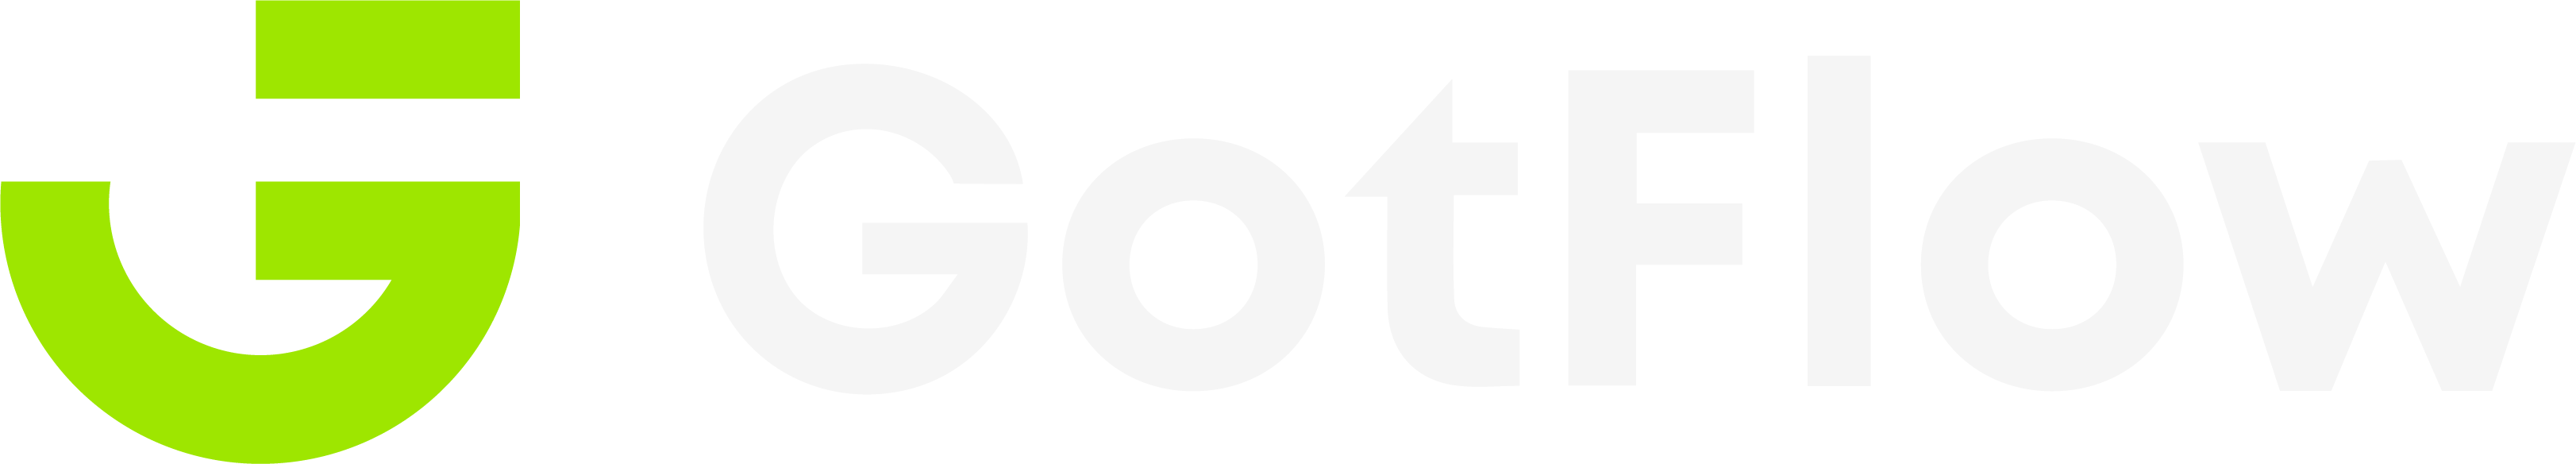 Gotflow logo